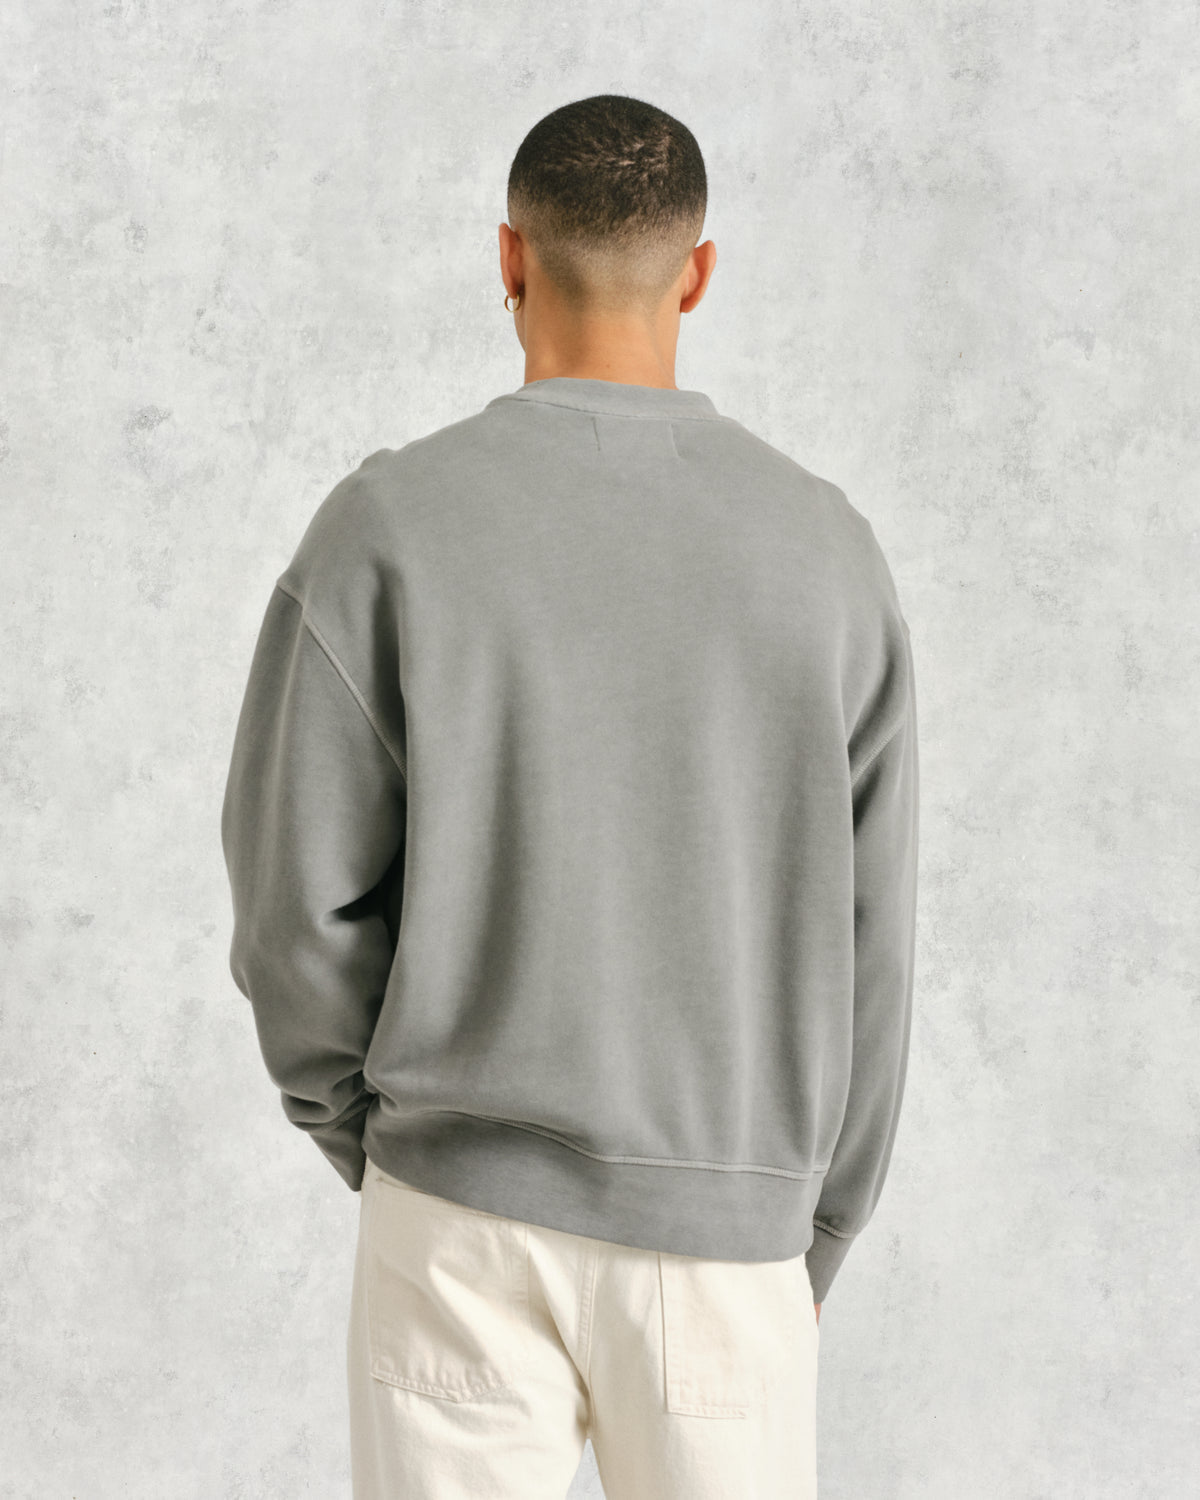 Zen Sweatshirt Grey Loopback Terry